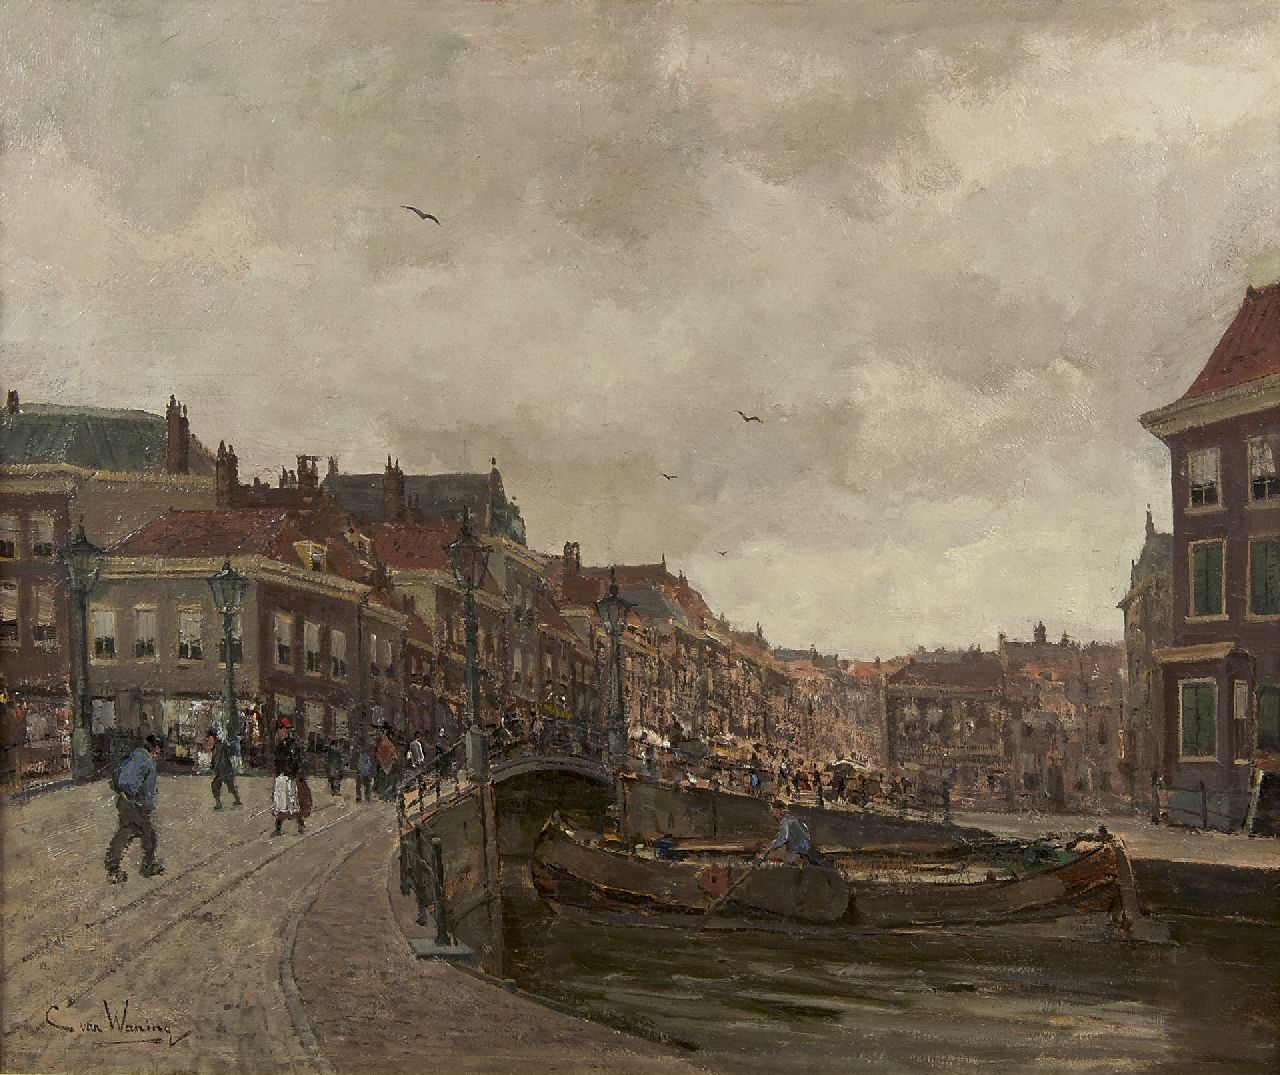 Waning C.A. van | Cornelis Anthonij 'Kees' van Waning | Schilderijen te koop aangeboden | Gezicht op de Wagenbrug en de Wagenstraat, Den Haag, olieverf op doek 51,2 x 61,3 cm, gesigneerd linksonder